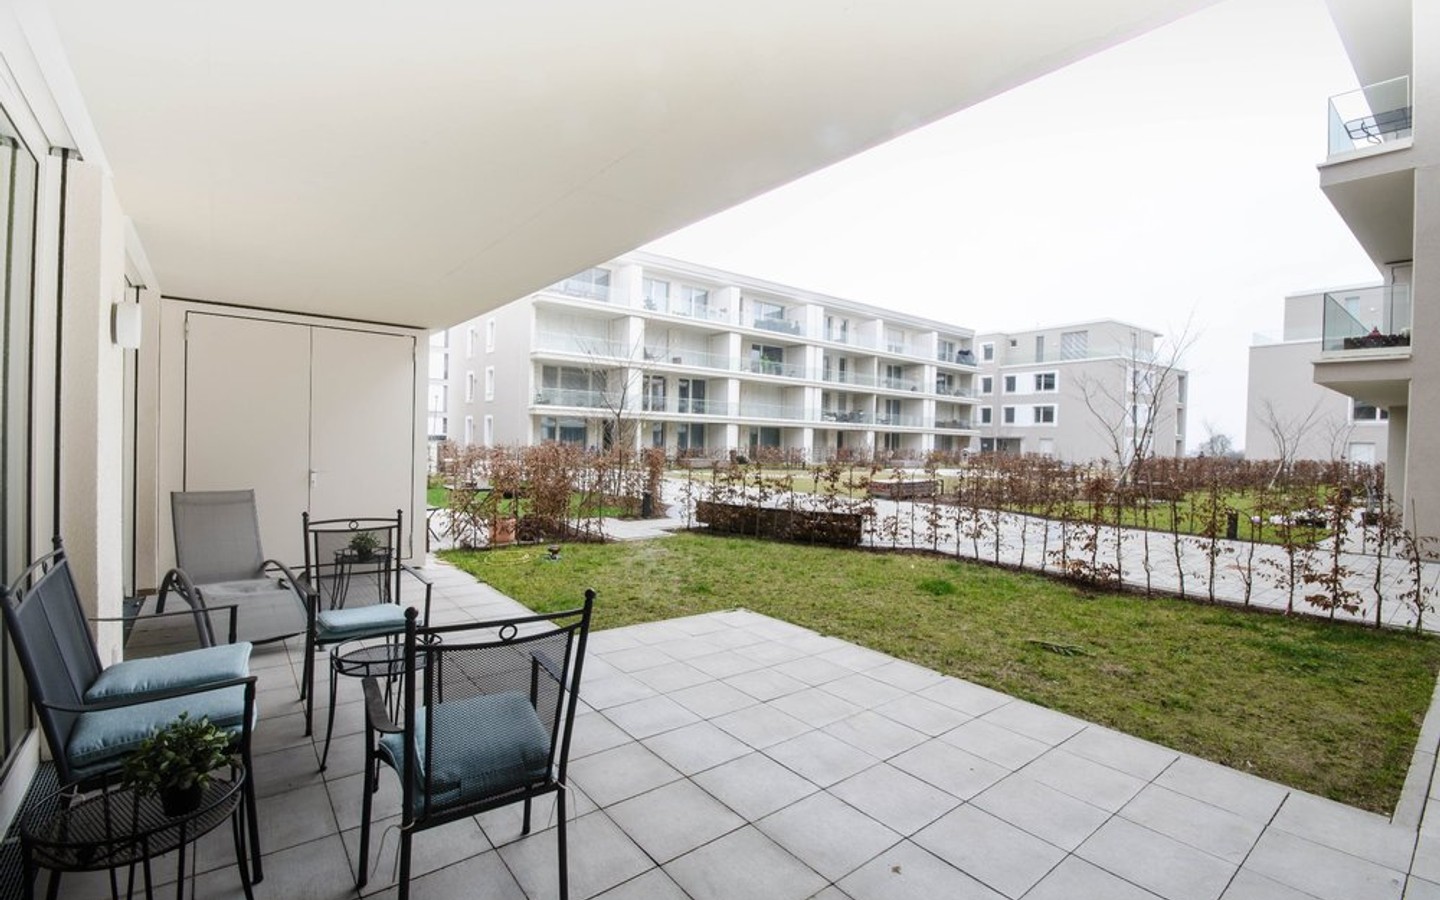 Terrasse - Moderne hochwertig vollausgestattete  Zweizimmerwohnung mit Garten